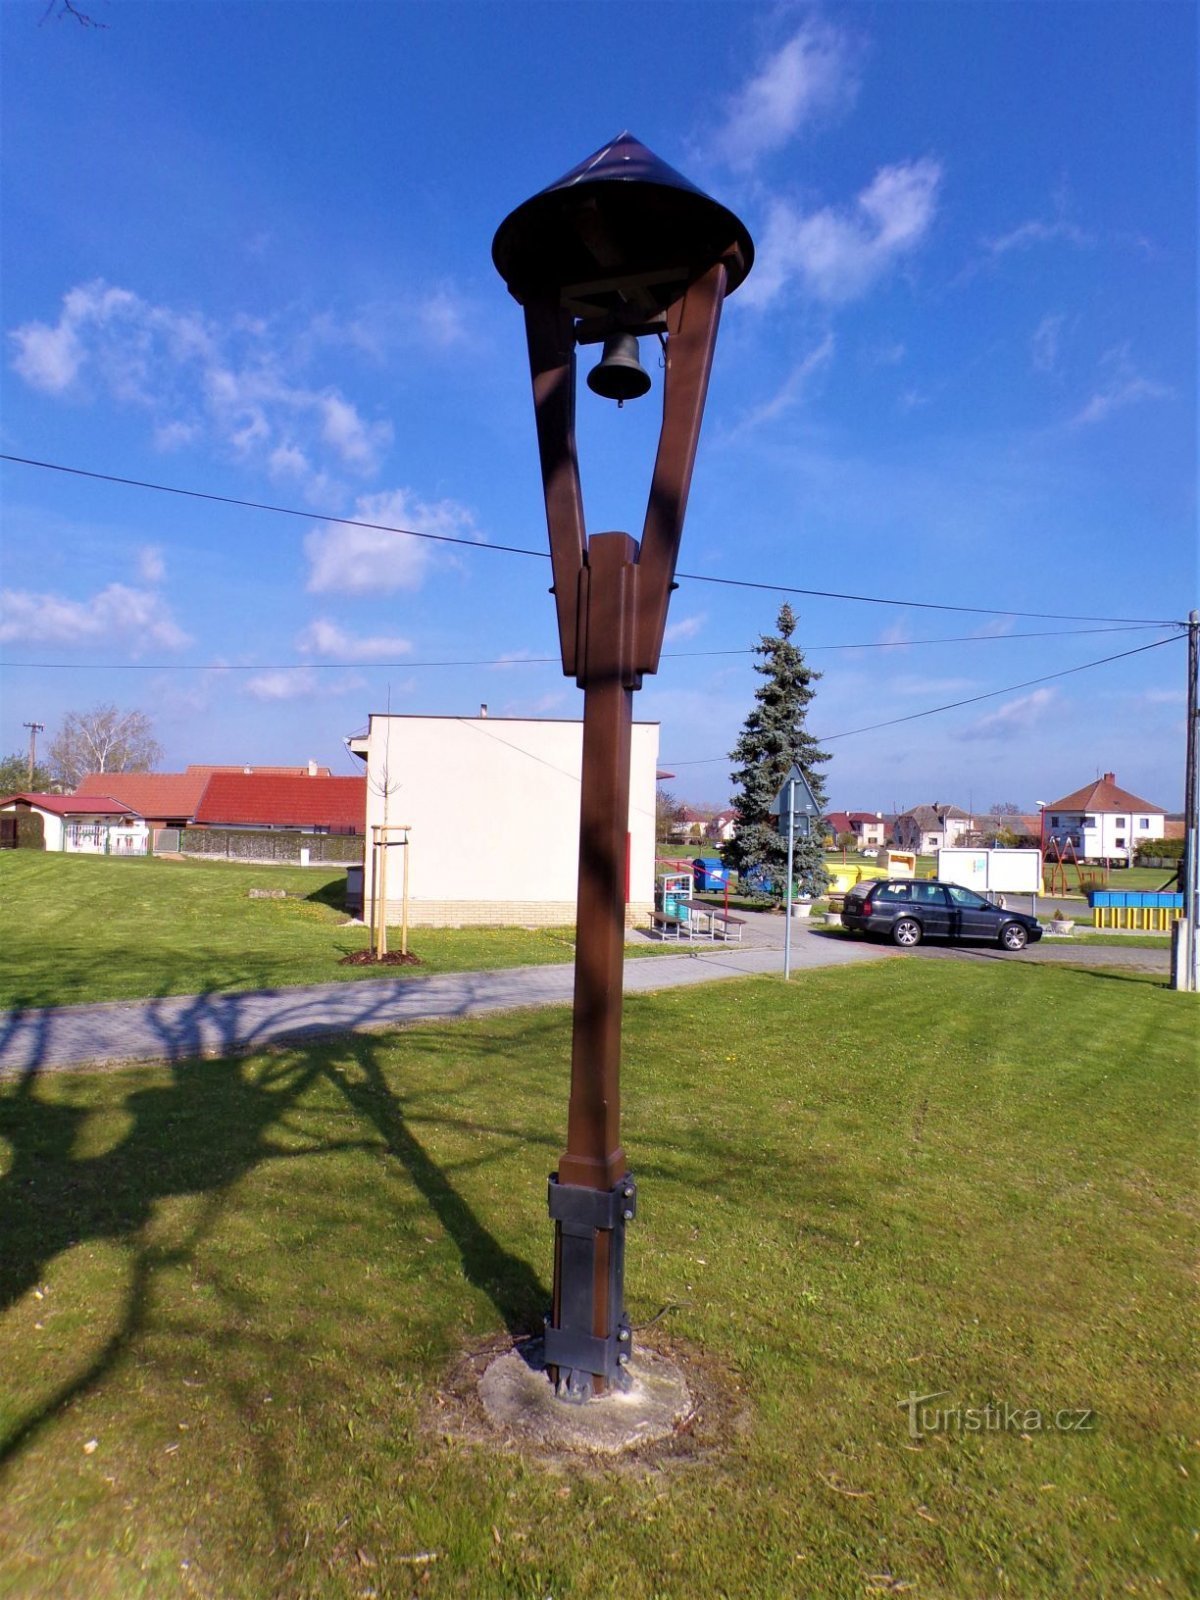 Zvonik (Kobylice, 30.4.2021. XNUMX. XNUMX)